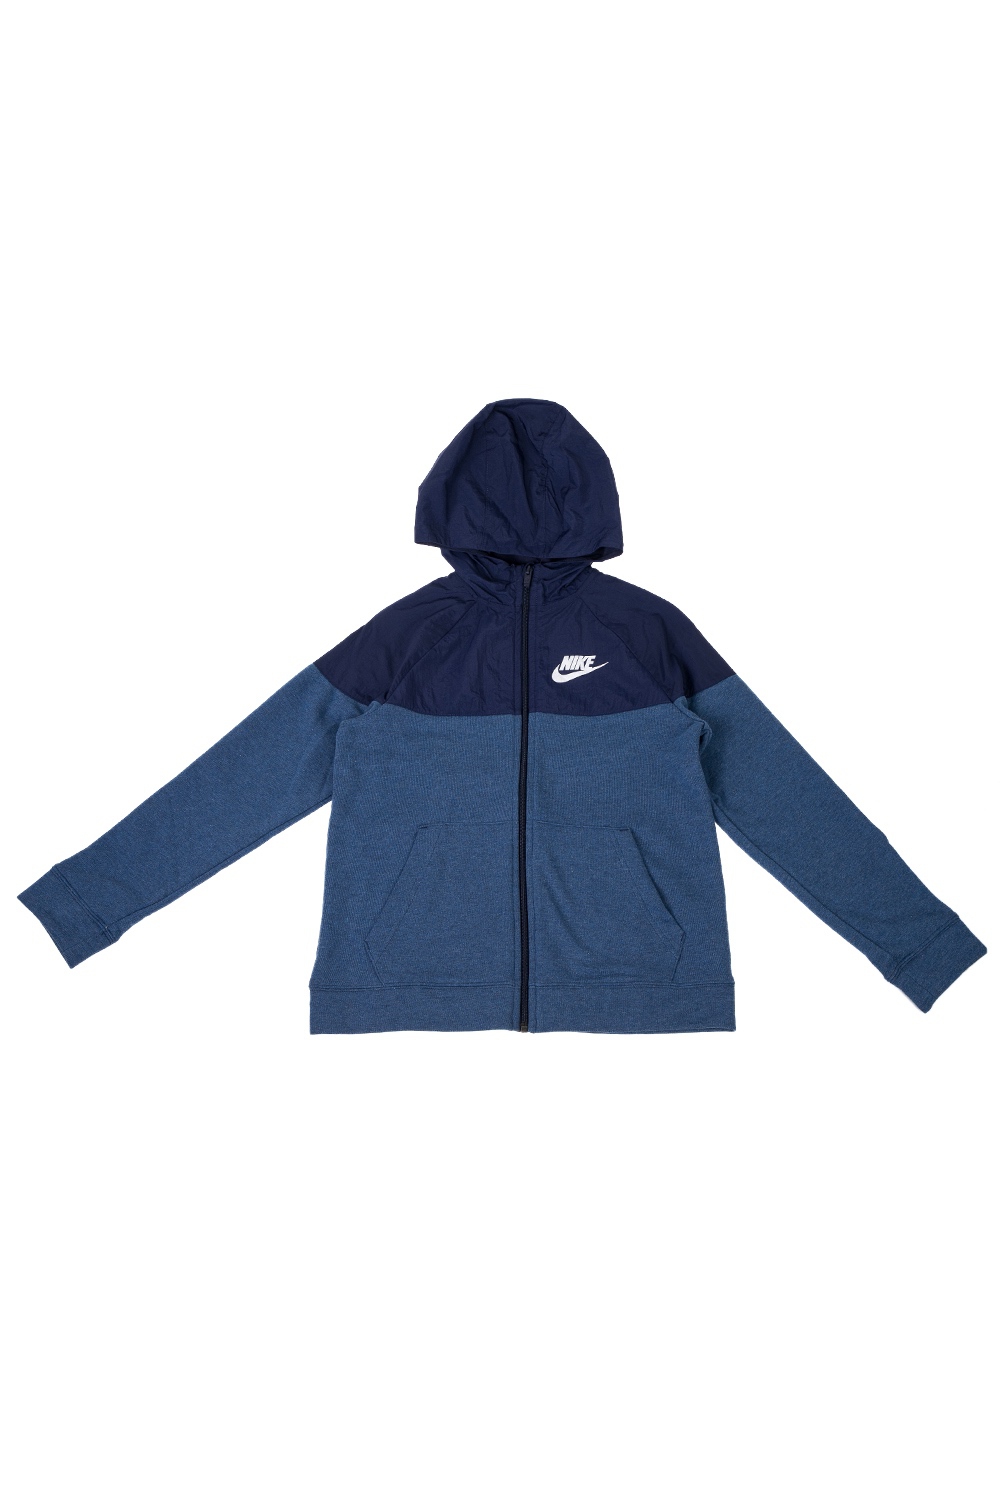 Παιδικά/Boys/Ρούχα/Αθλητικά NIKE - Παιδική φούτερ ζακέτα NIKE SPORTSWEAR μπλε